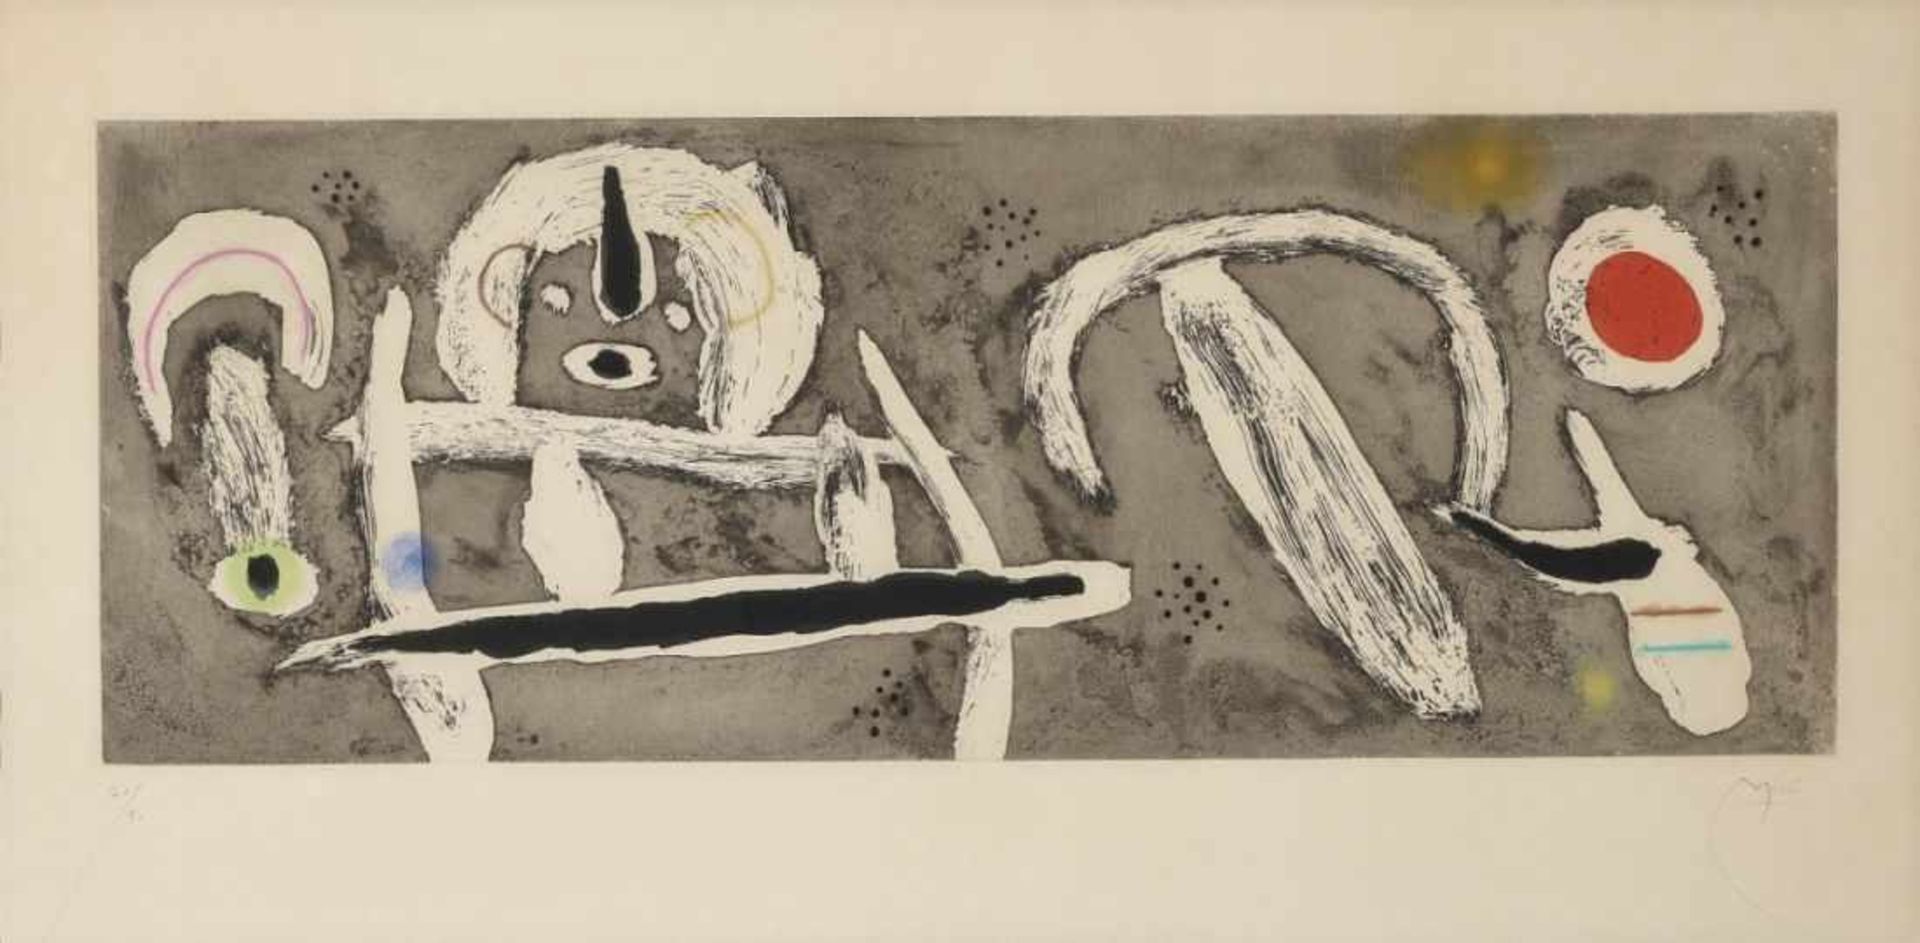 Miró, Joan 1893 Barcelona - 1983 Palma de Mallorca Grand Vent. 1960 Farbige Aquatintaradierung auf